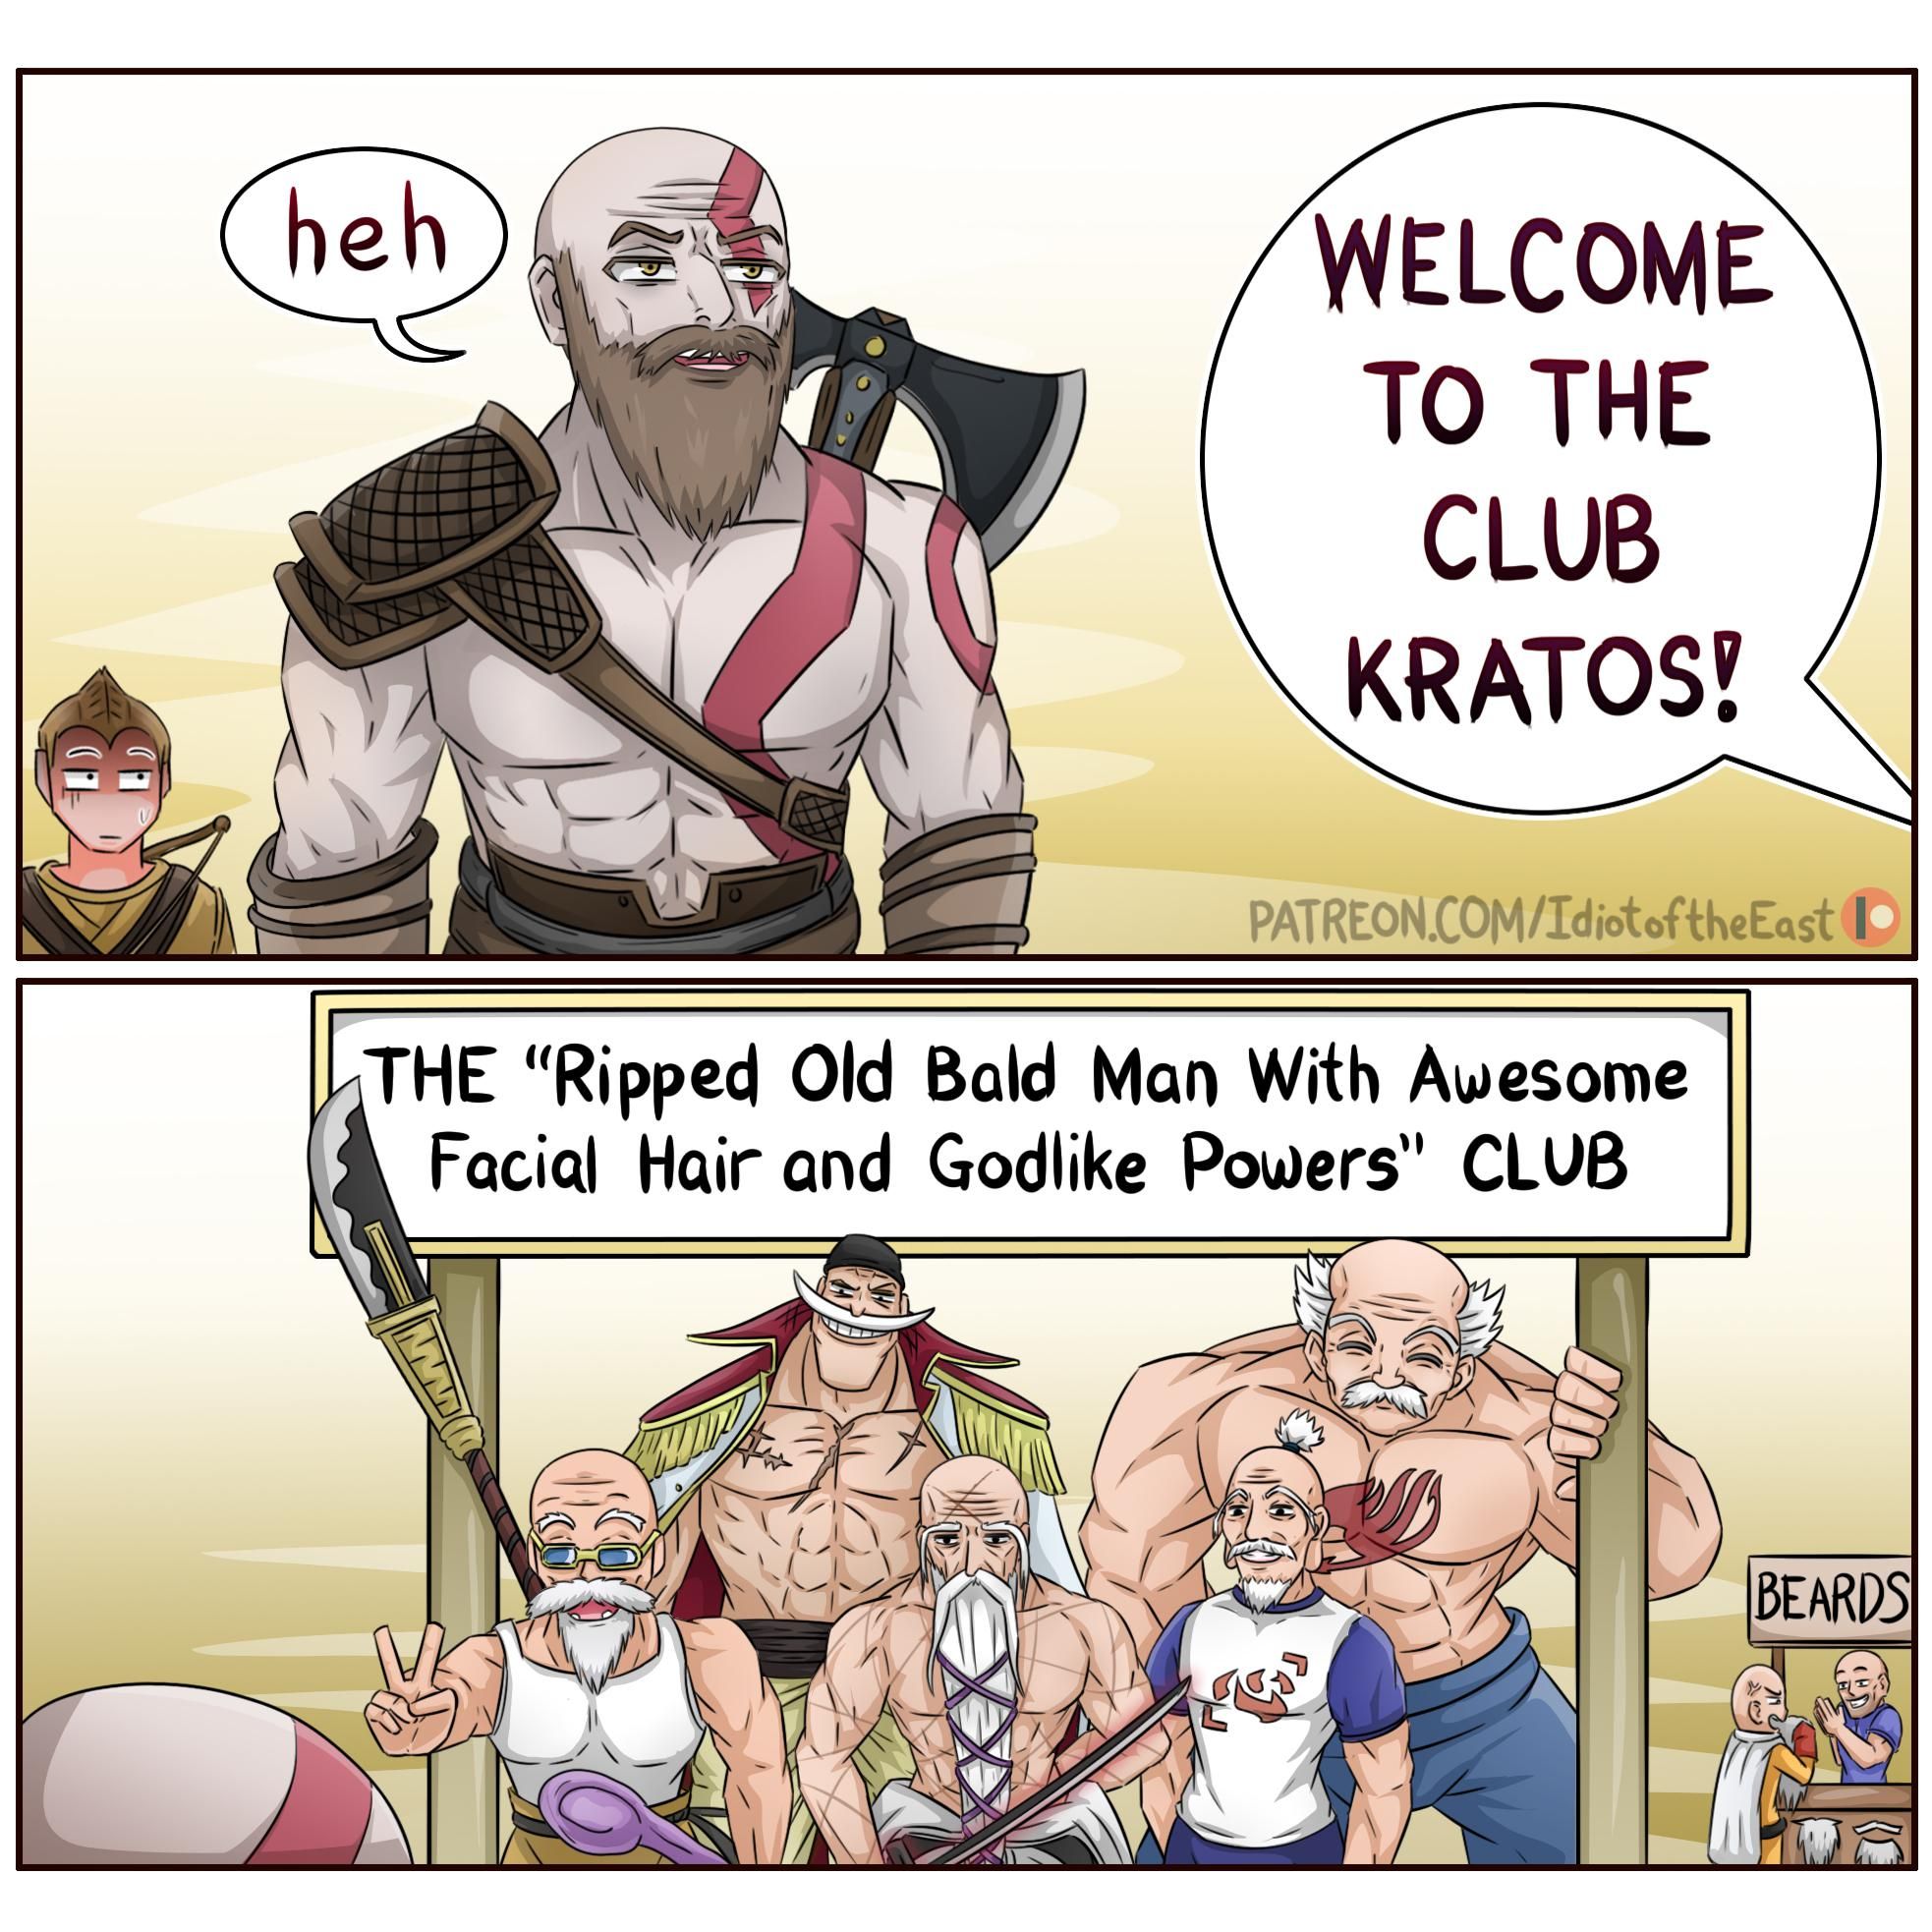 No wonder Kratos is overpowered